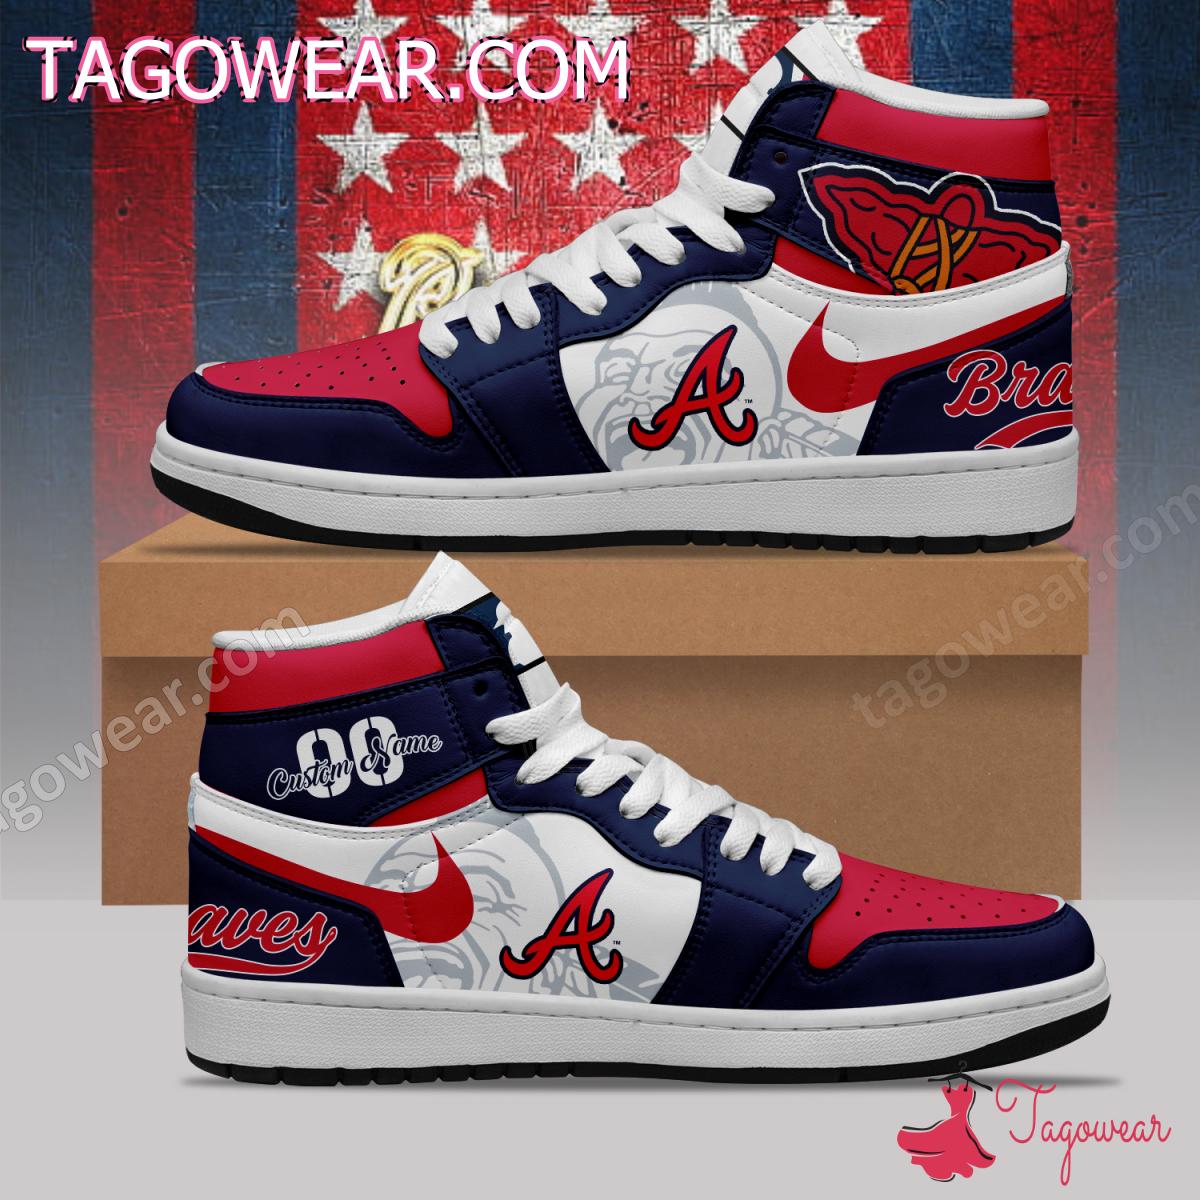 Atlanta Braves Mascot Personalized Air Jordan High Top Shoes